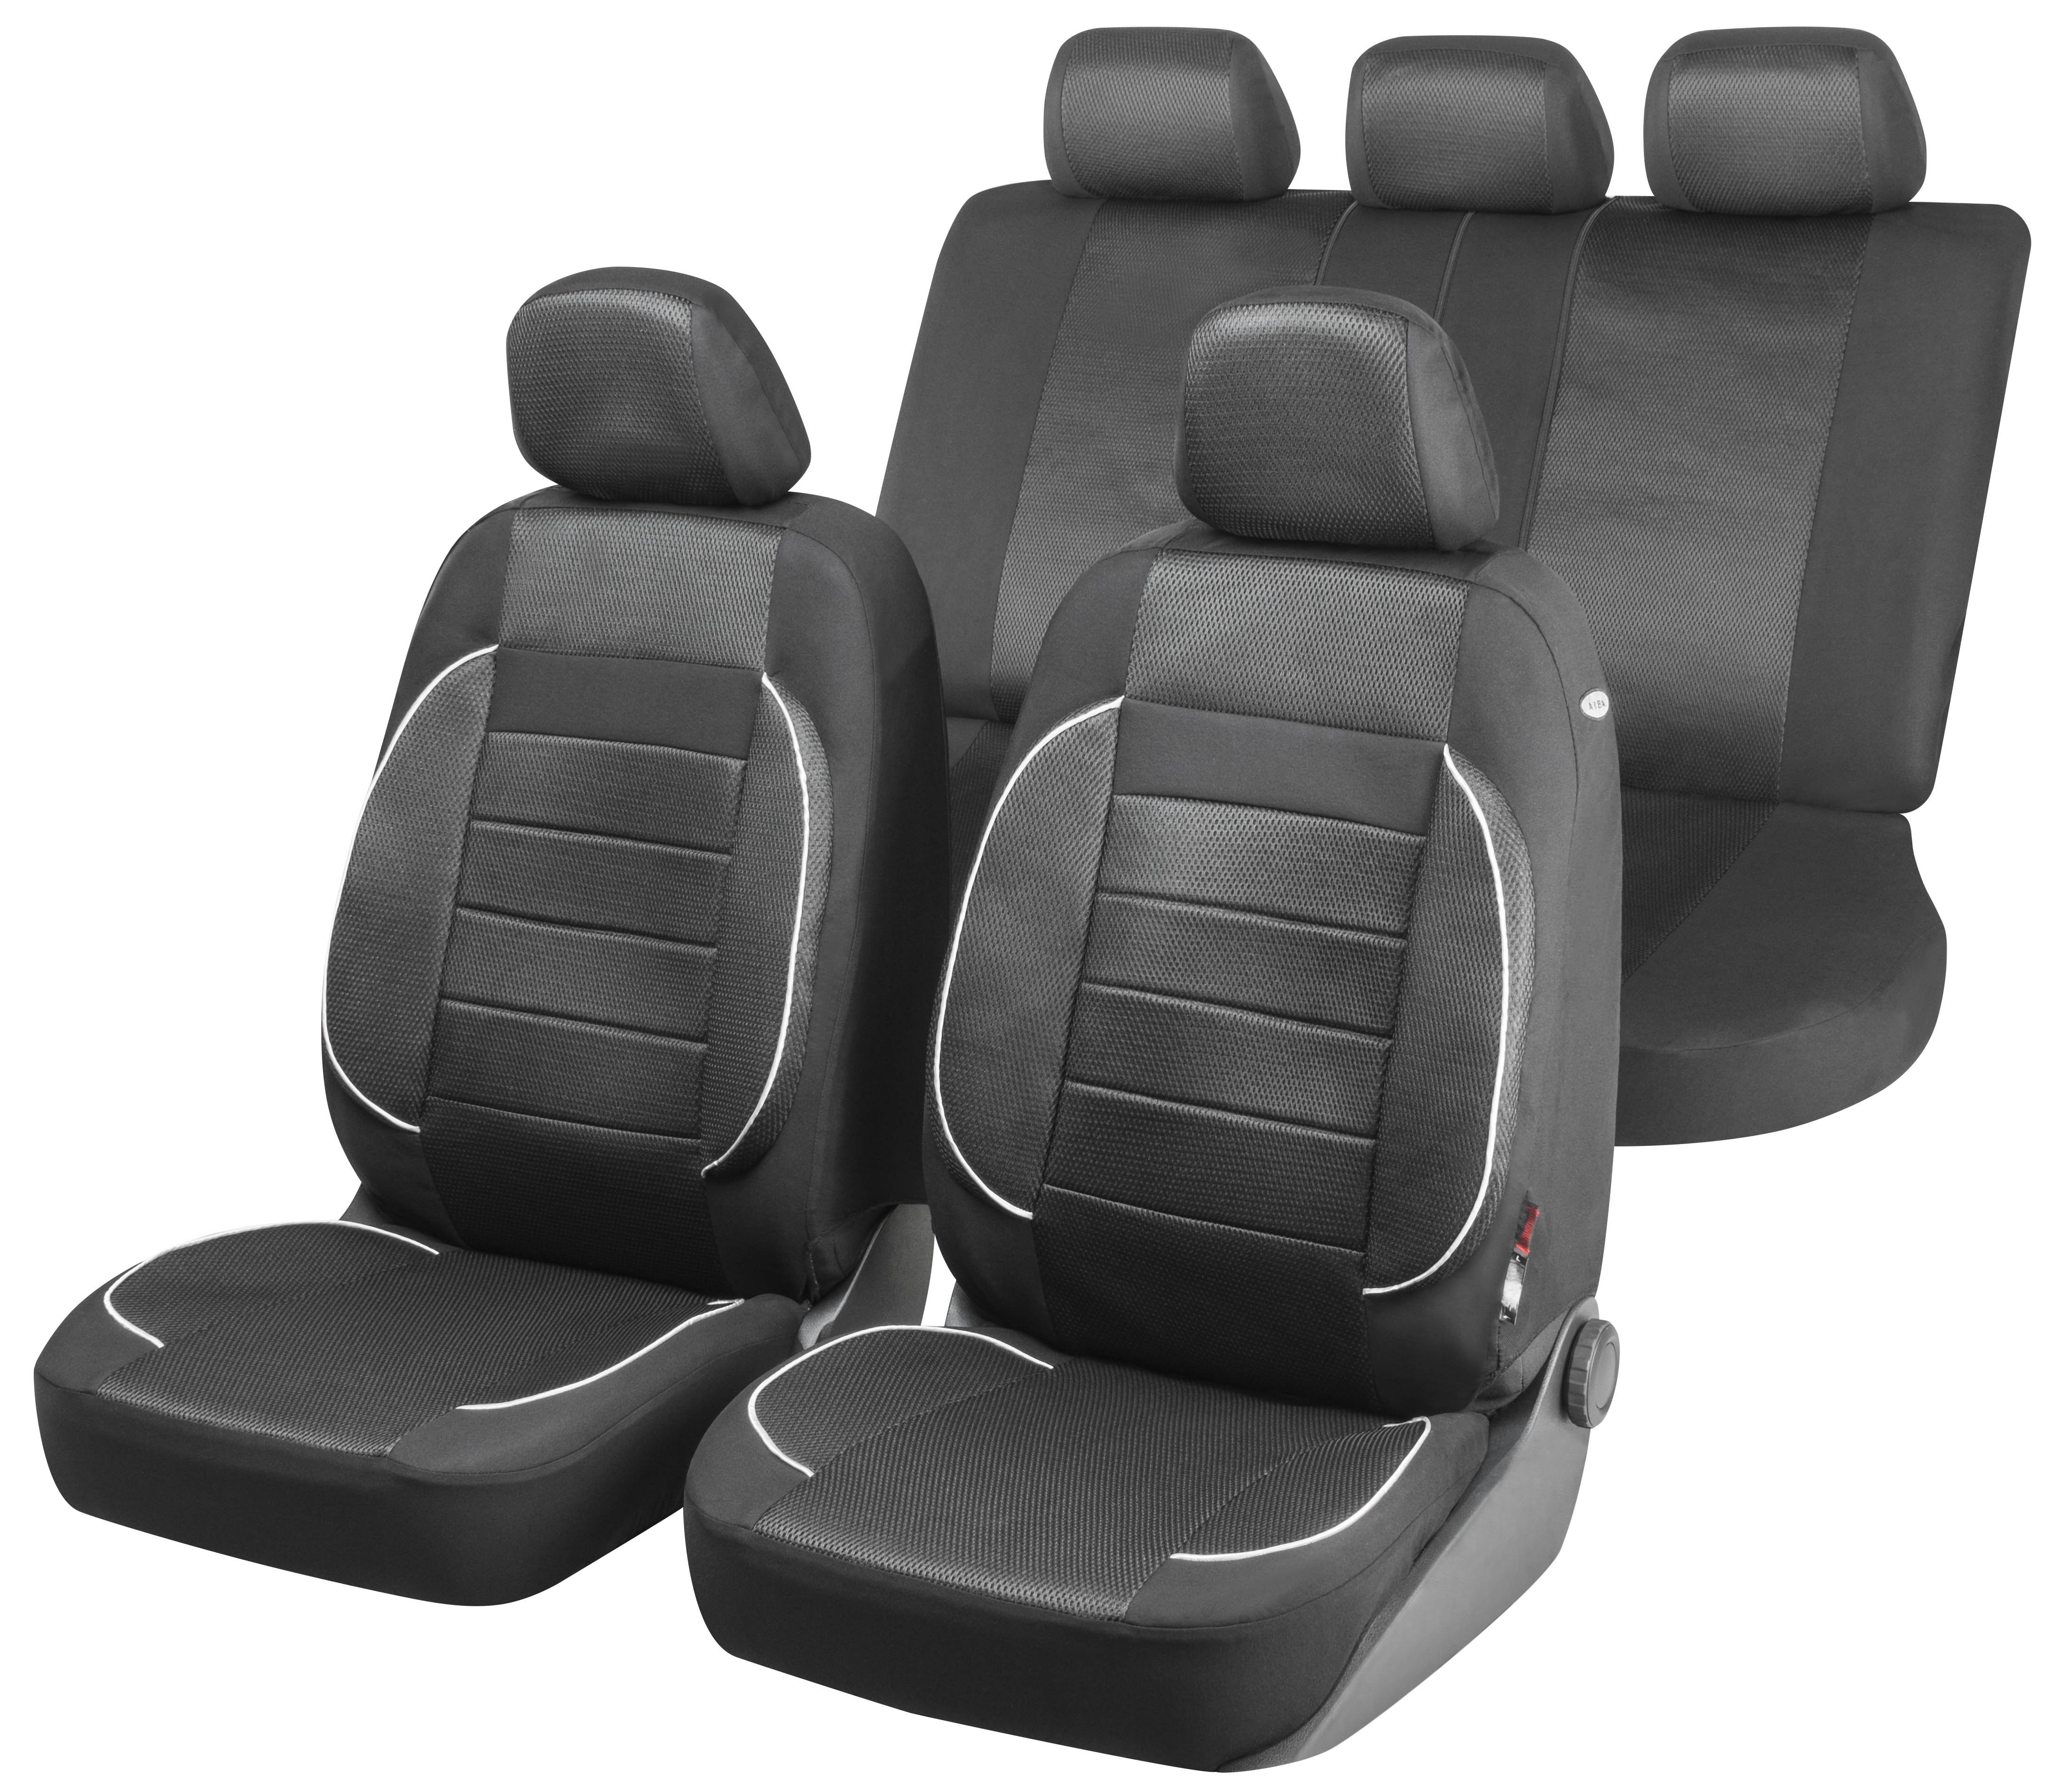 Auto stoelbeschermer Rover met Zipper ZIPP-IT Premium Autostoelhoes, set, 2 stoelbeschermer voor voorstoel, 1 stoelbeschermer voor achterbank zwart